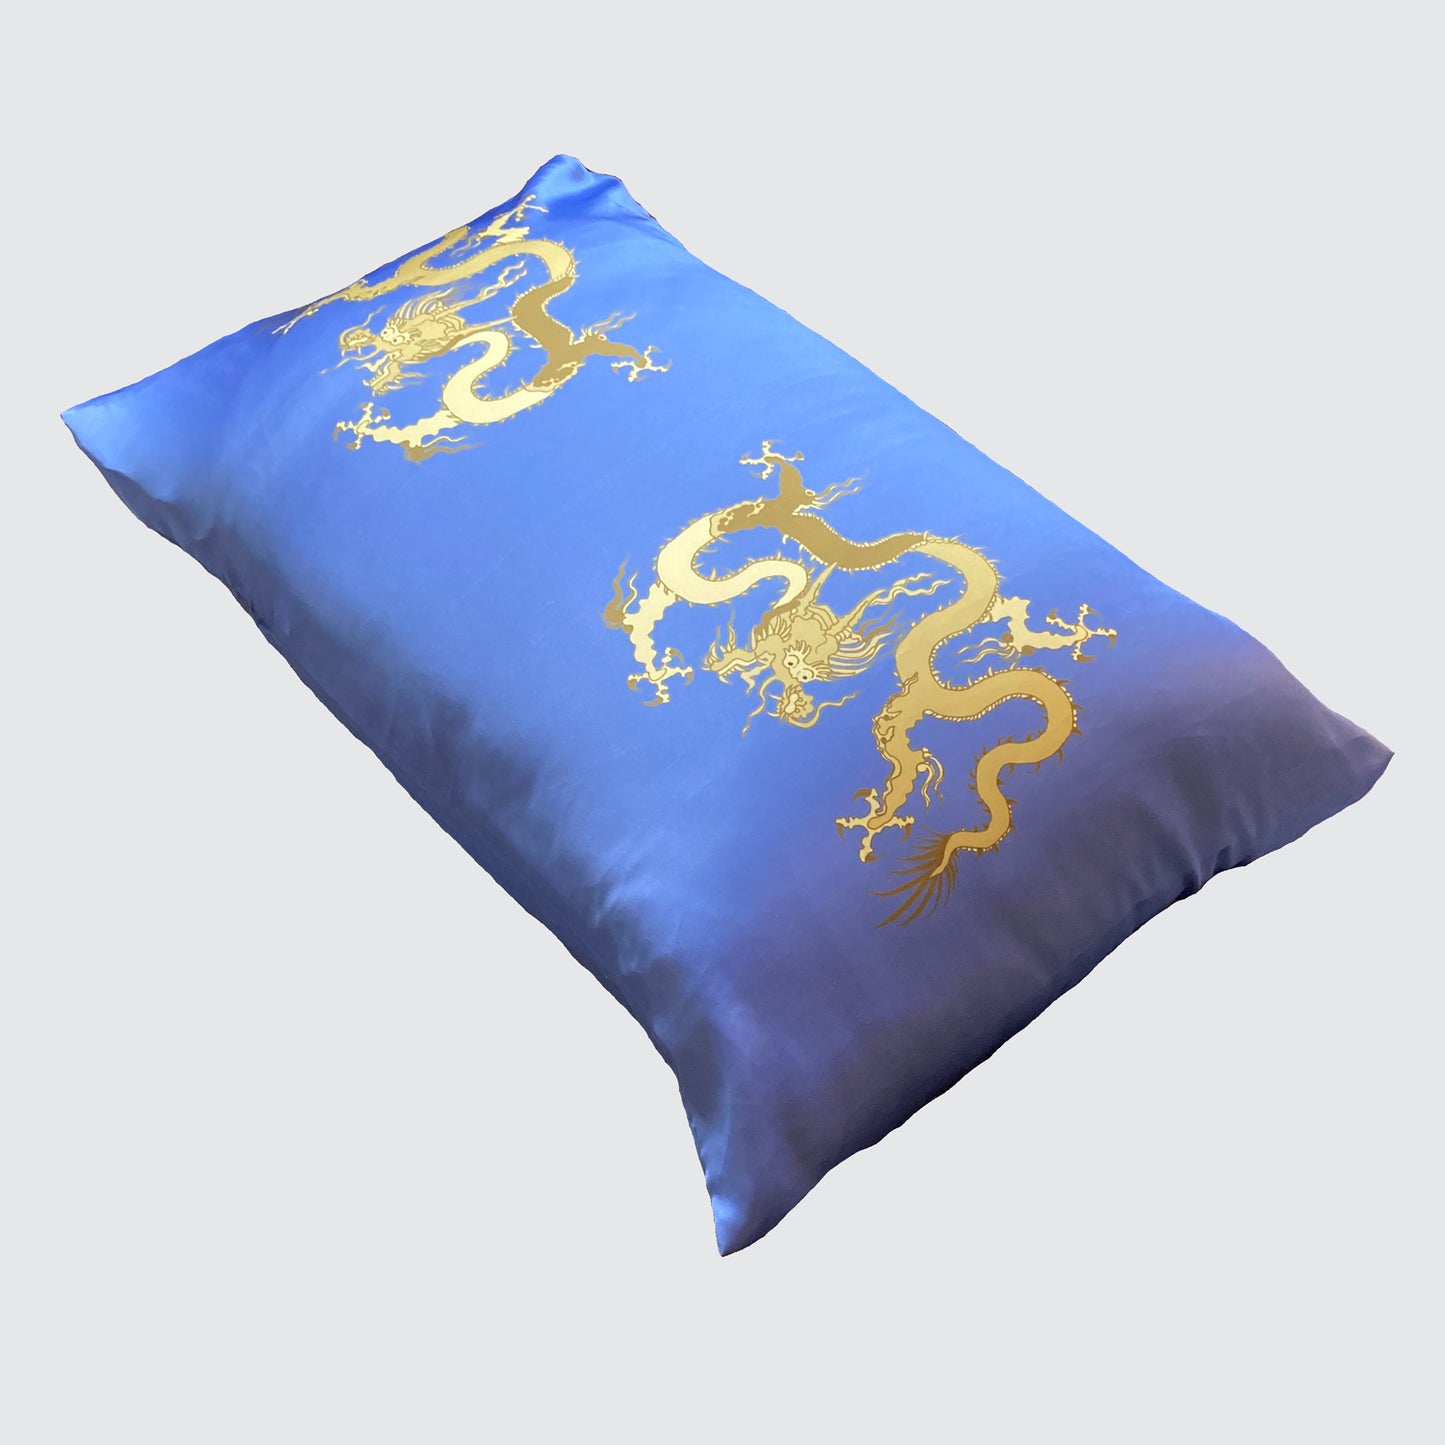 Silk Pillowcase - Blue With Golden Dragon Design